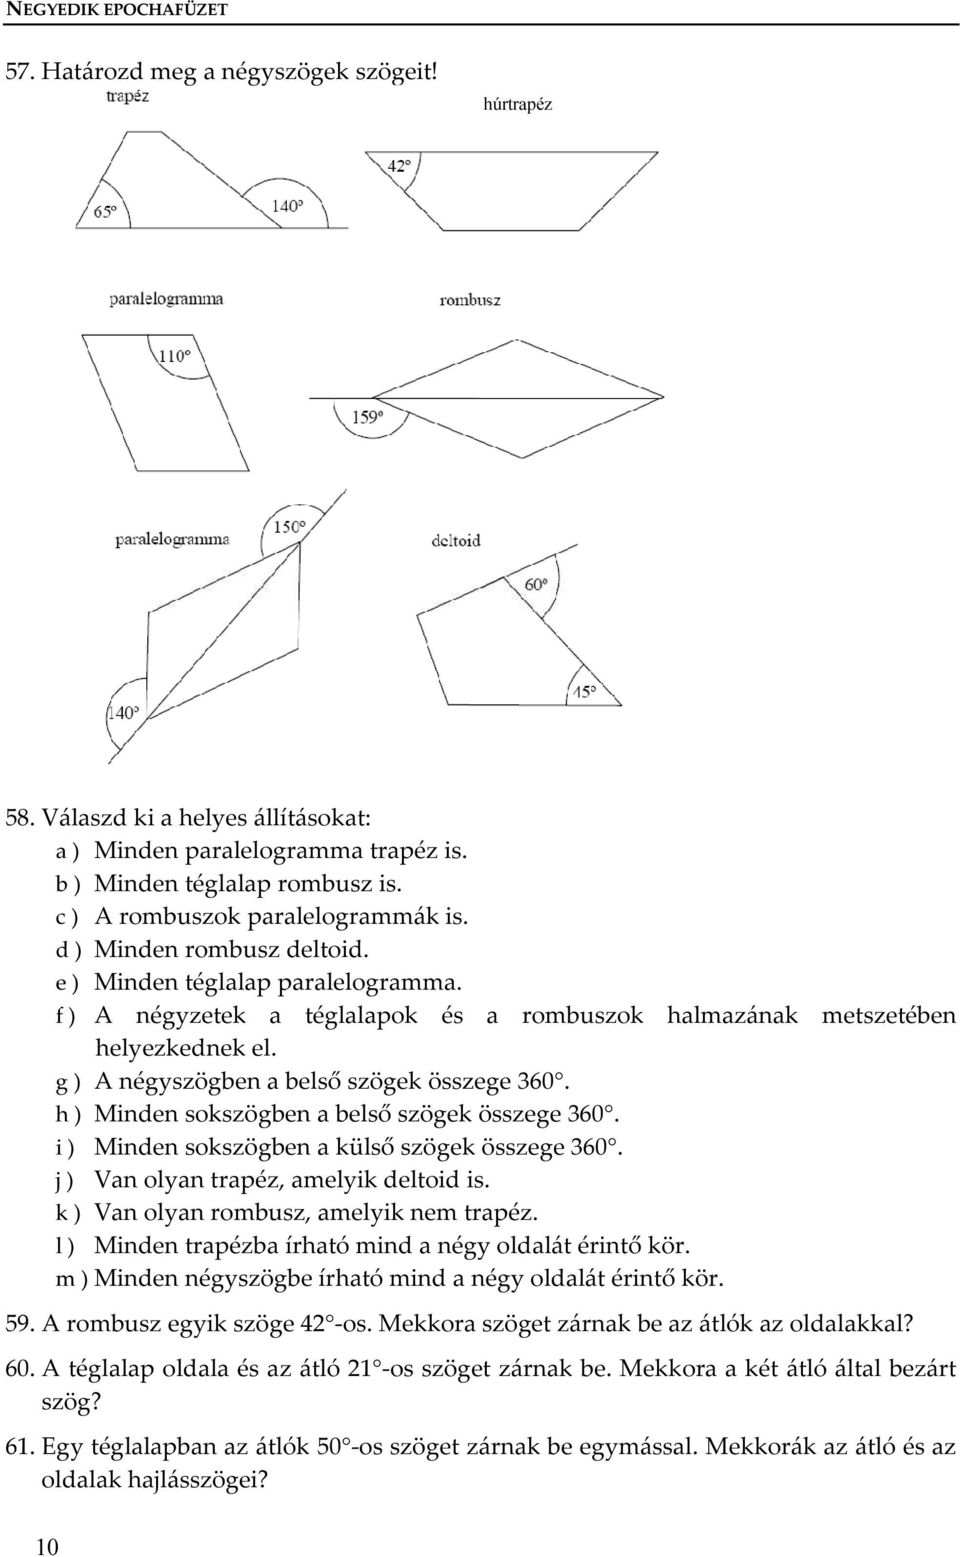 g ) A négyszögben a belső szögek összege 360. h ) Minden sokszögben a belső szögek összege 360. i ) Minden sokszögben a külső szögek összege 360. j ) Van olyan trapéz, amelyik deltoid is.